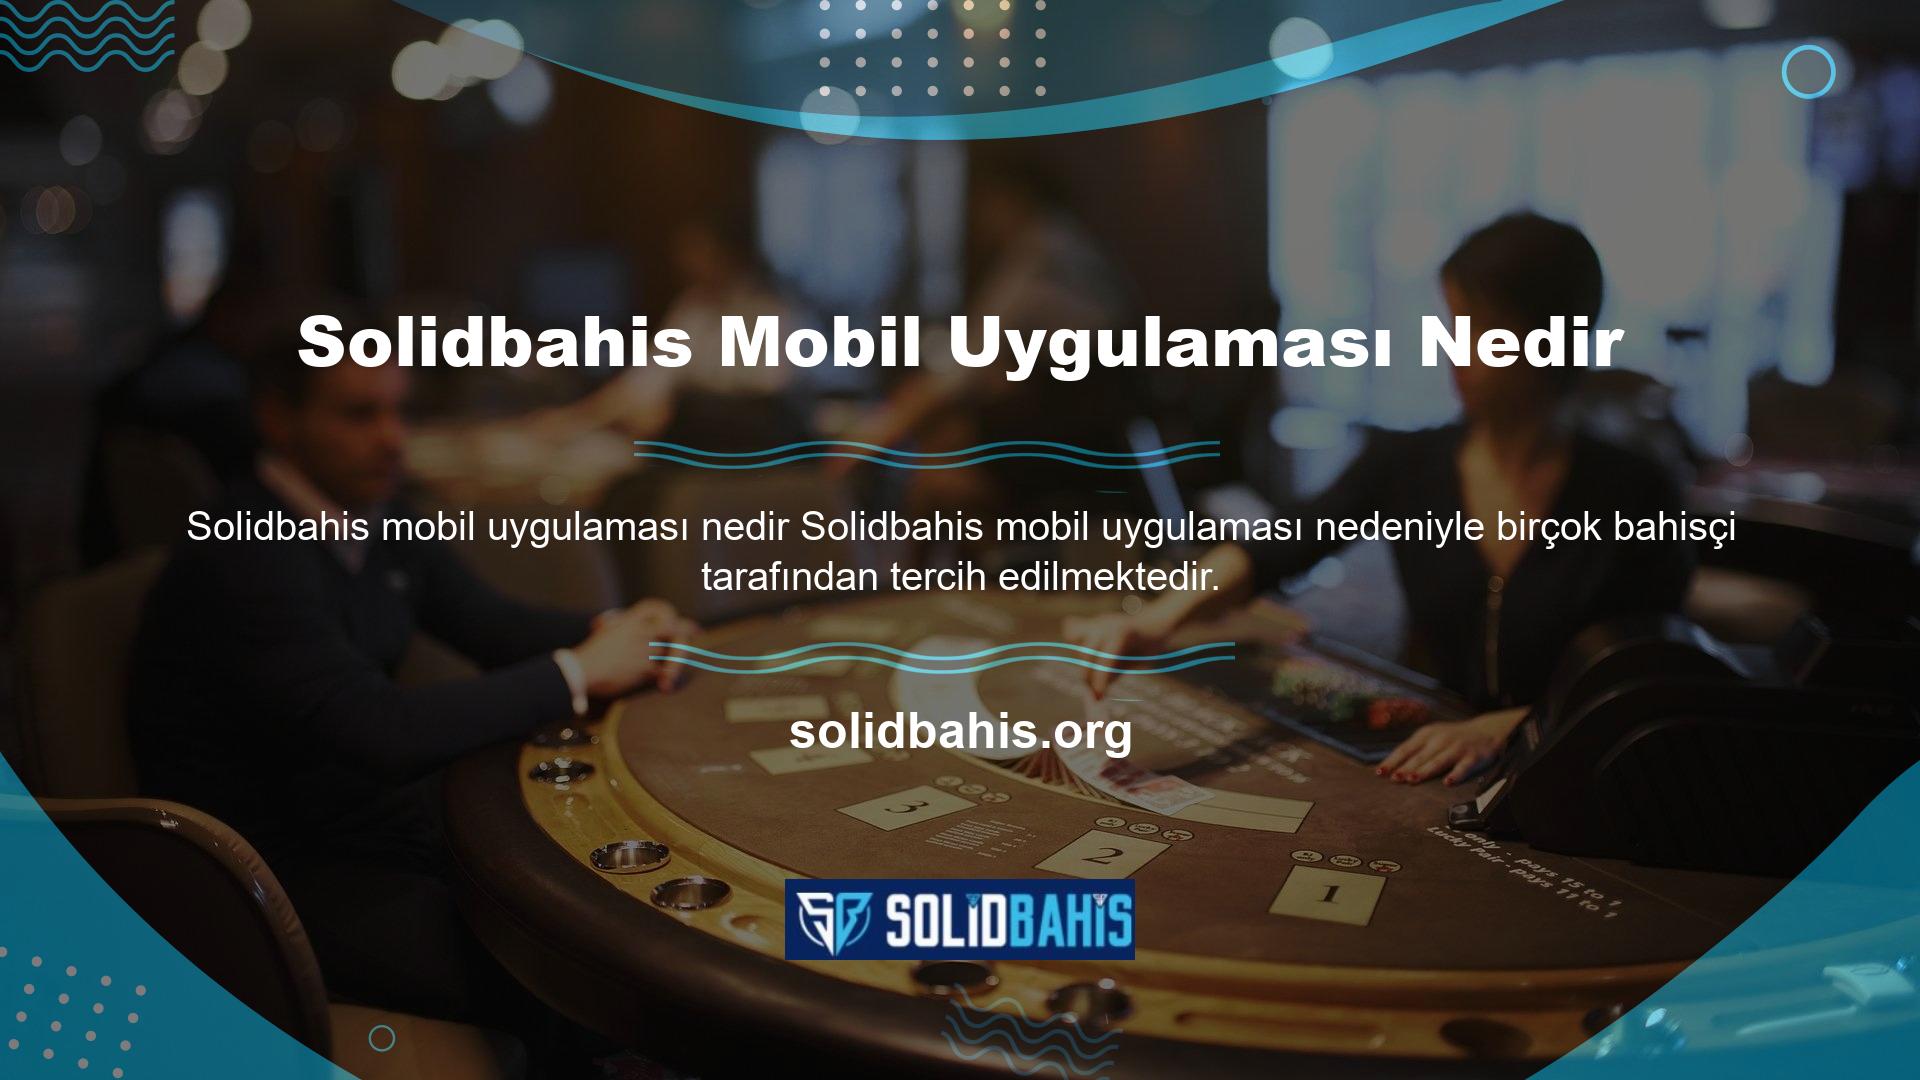 Solidbahis web sitesini kullanmak için öncelikle web sitesine erişim sağlamanız gerekmektedir